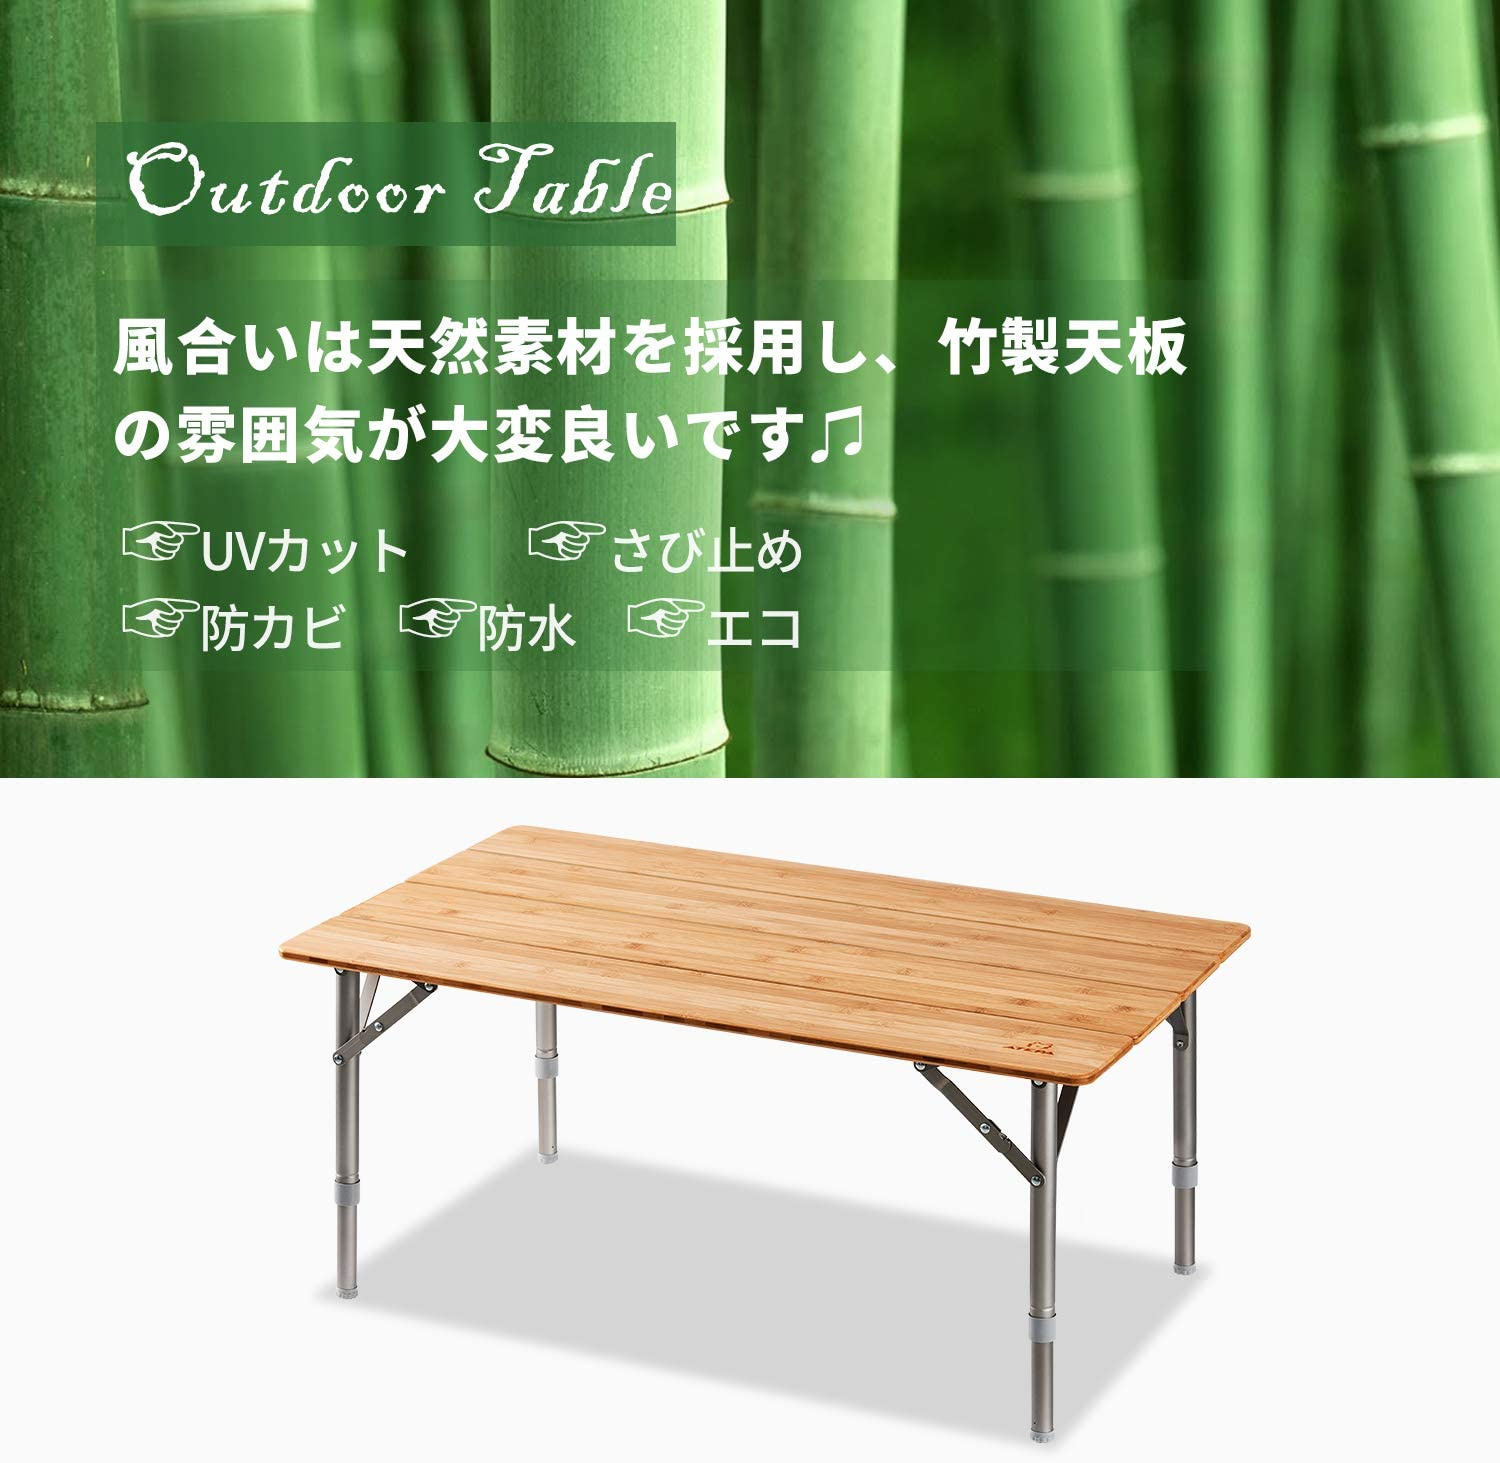 超歓迎 ATEPA アウトドア テーブル 折りたたみ 竹製 キャンプ 3段階高さ調整 80×60cm 机 バンブー ローテーブル 耐荷重80kg  収納バッグ付き